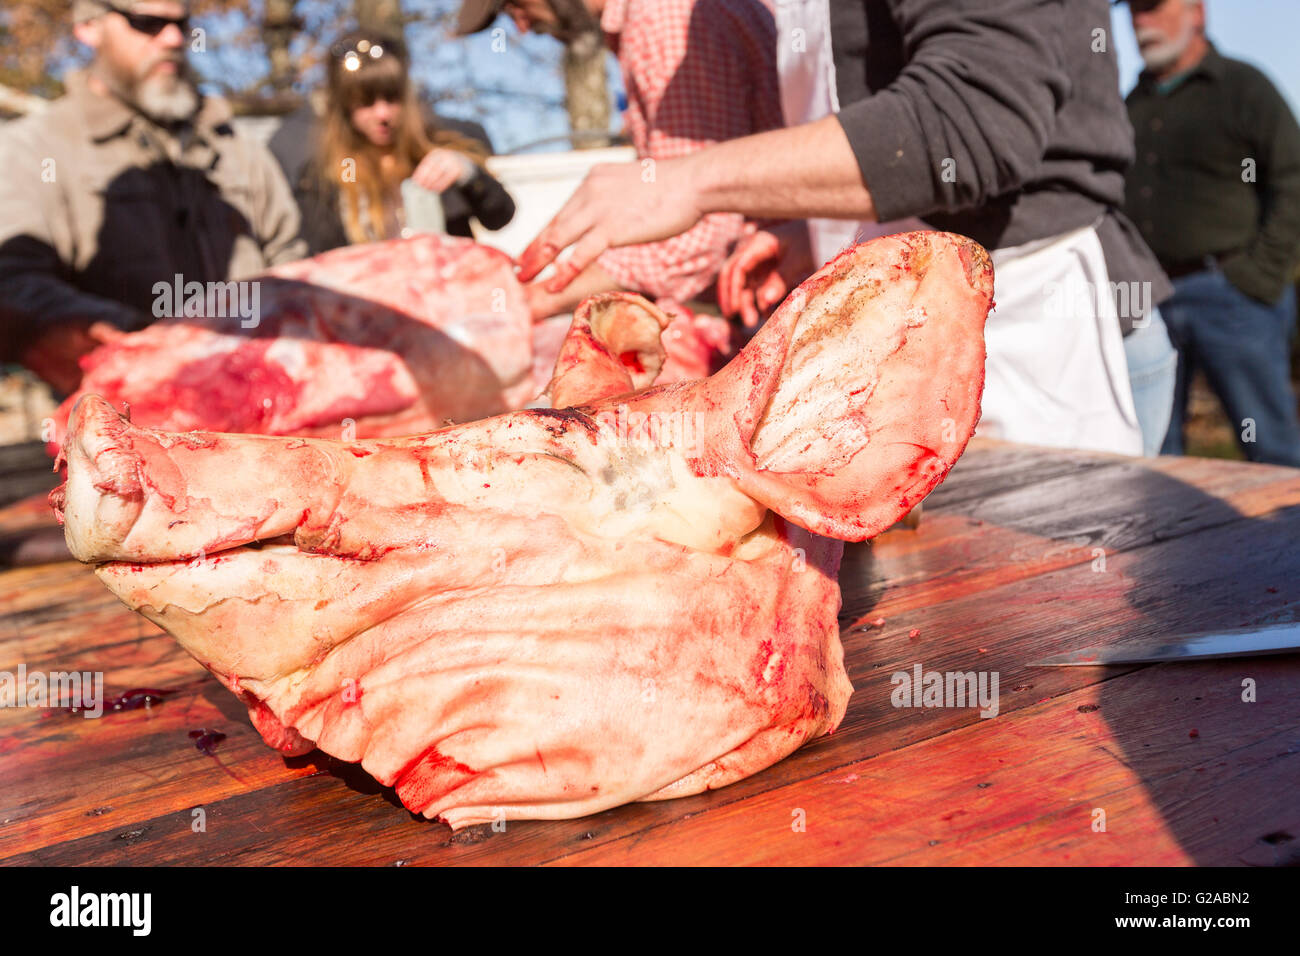 Schnitzen schwein schweinekopf und -Fotos in -Bildmaterial – Auflösung Alamy hoher